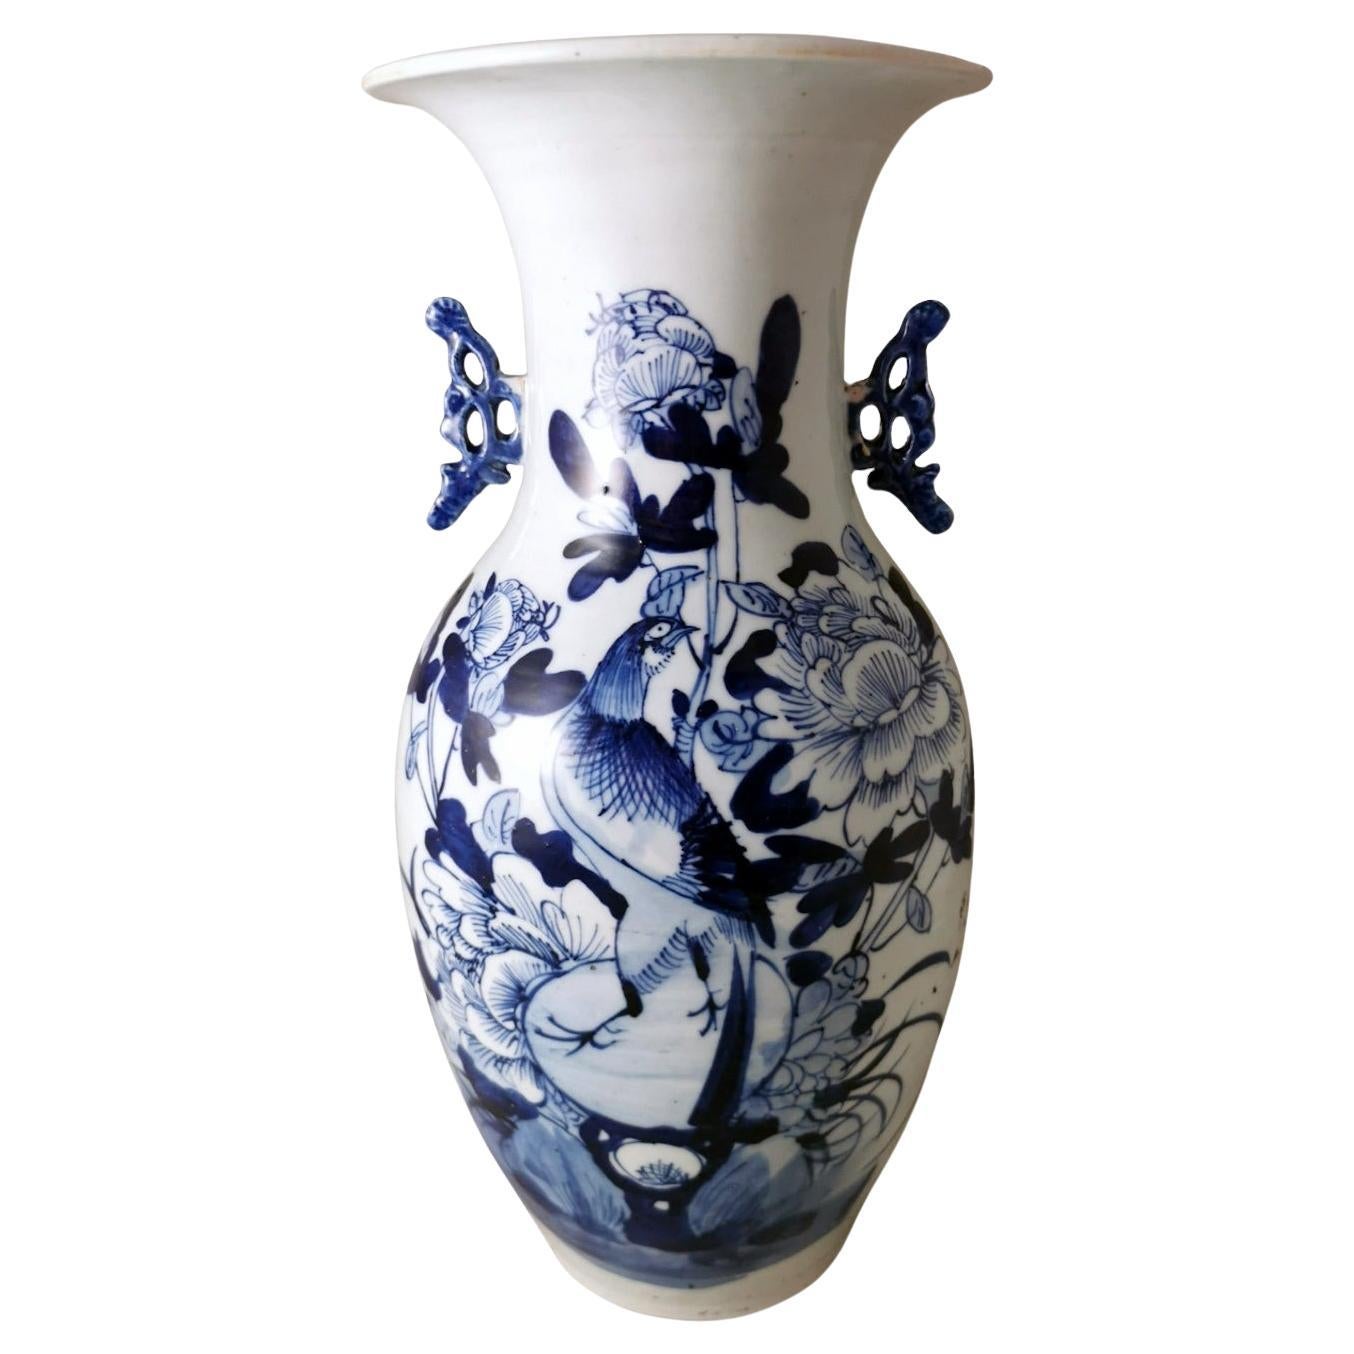 Chinese Porcelain Baluster Vase With Cobalt Blue Floral Decoration